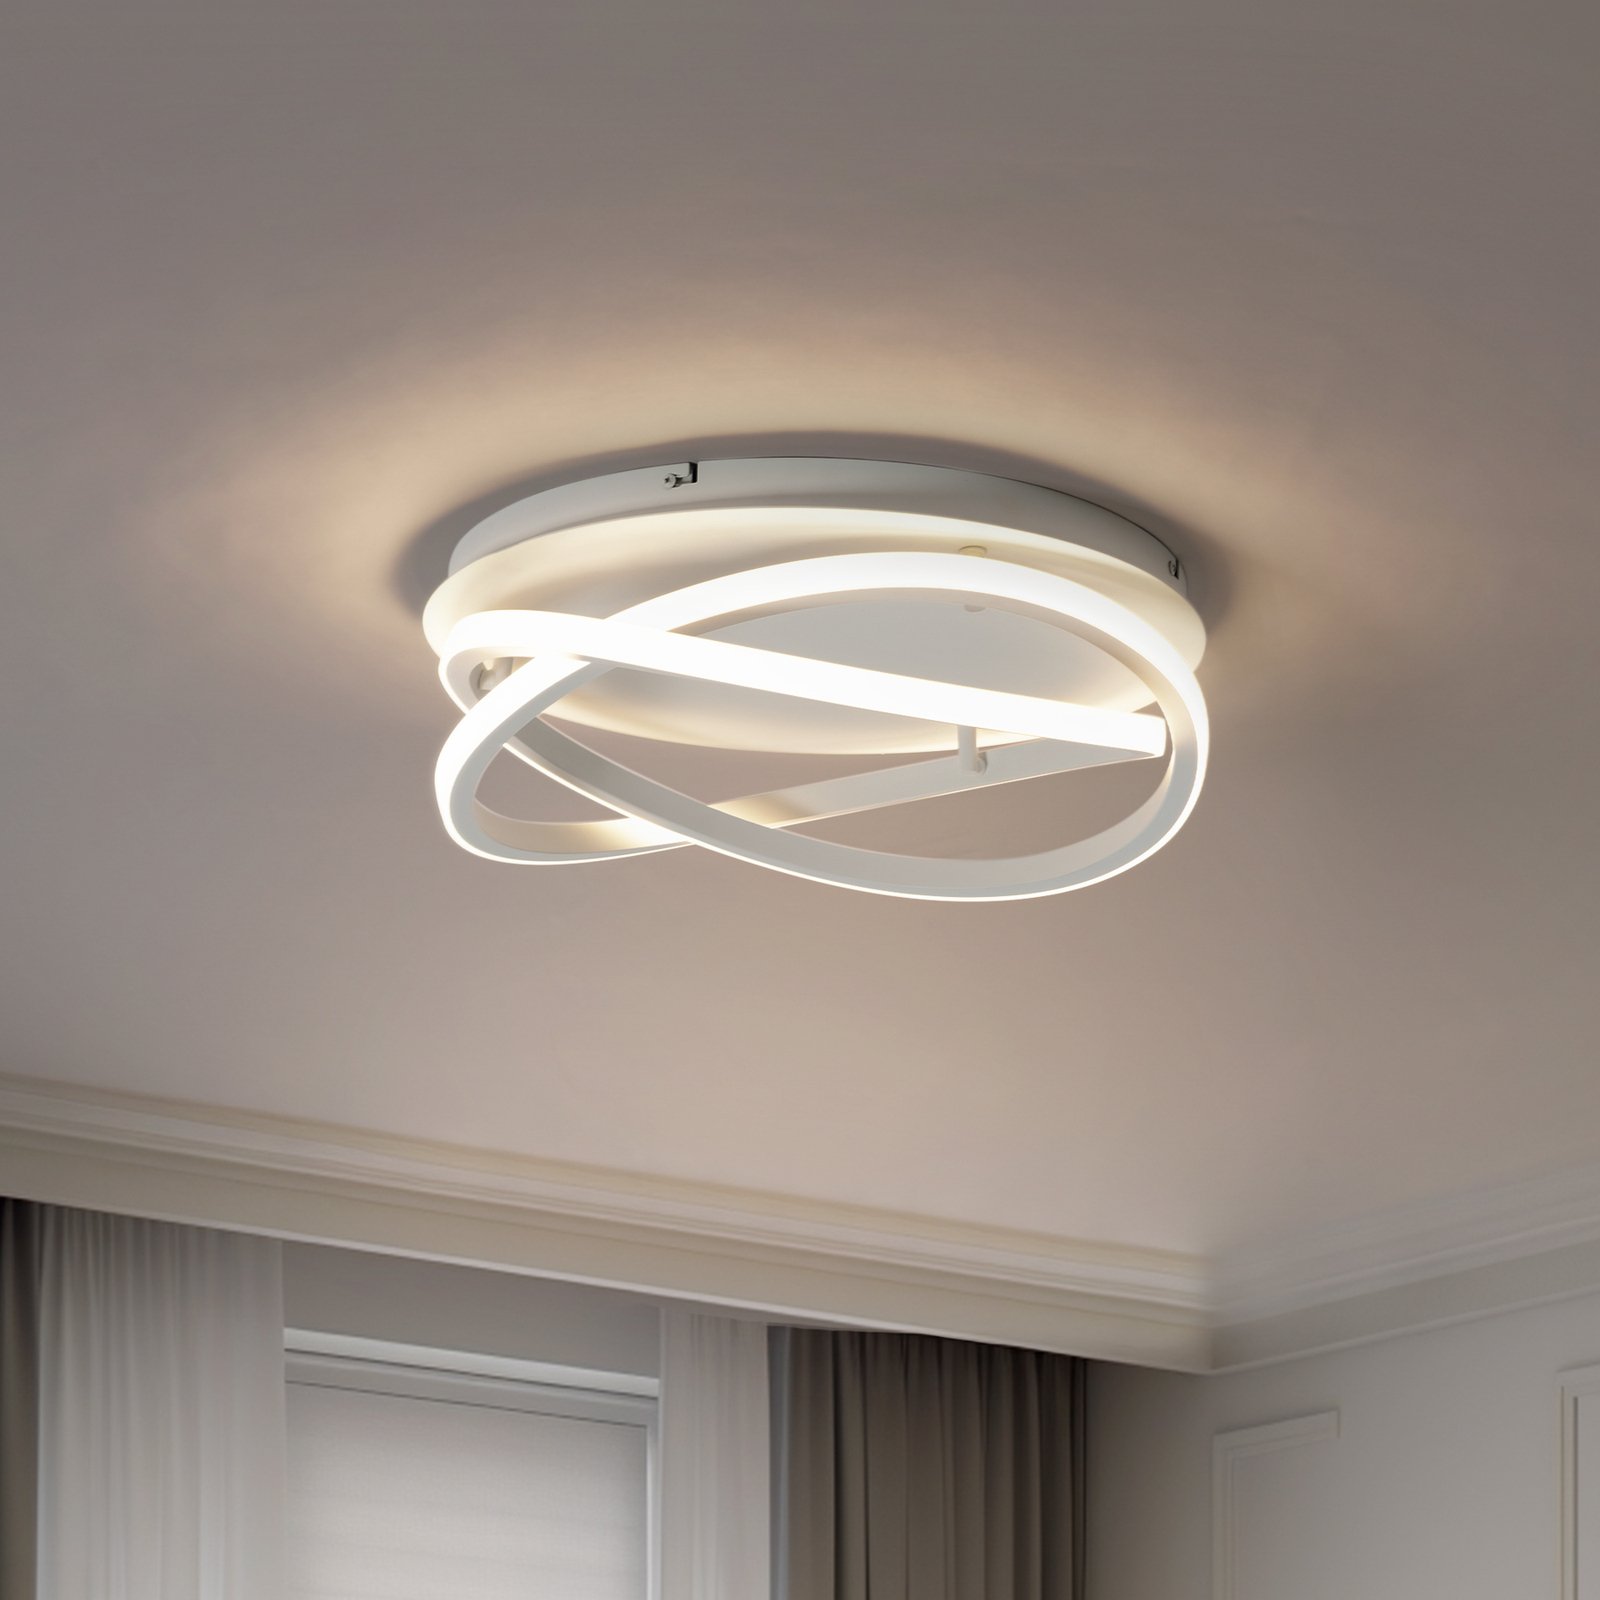 Lucande LED plafondlamp Aldric, wit, aluminium